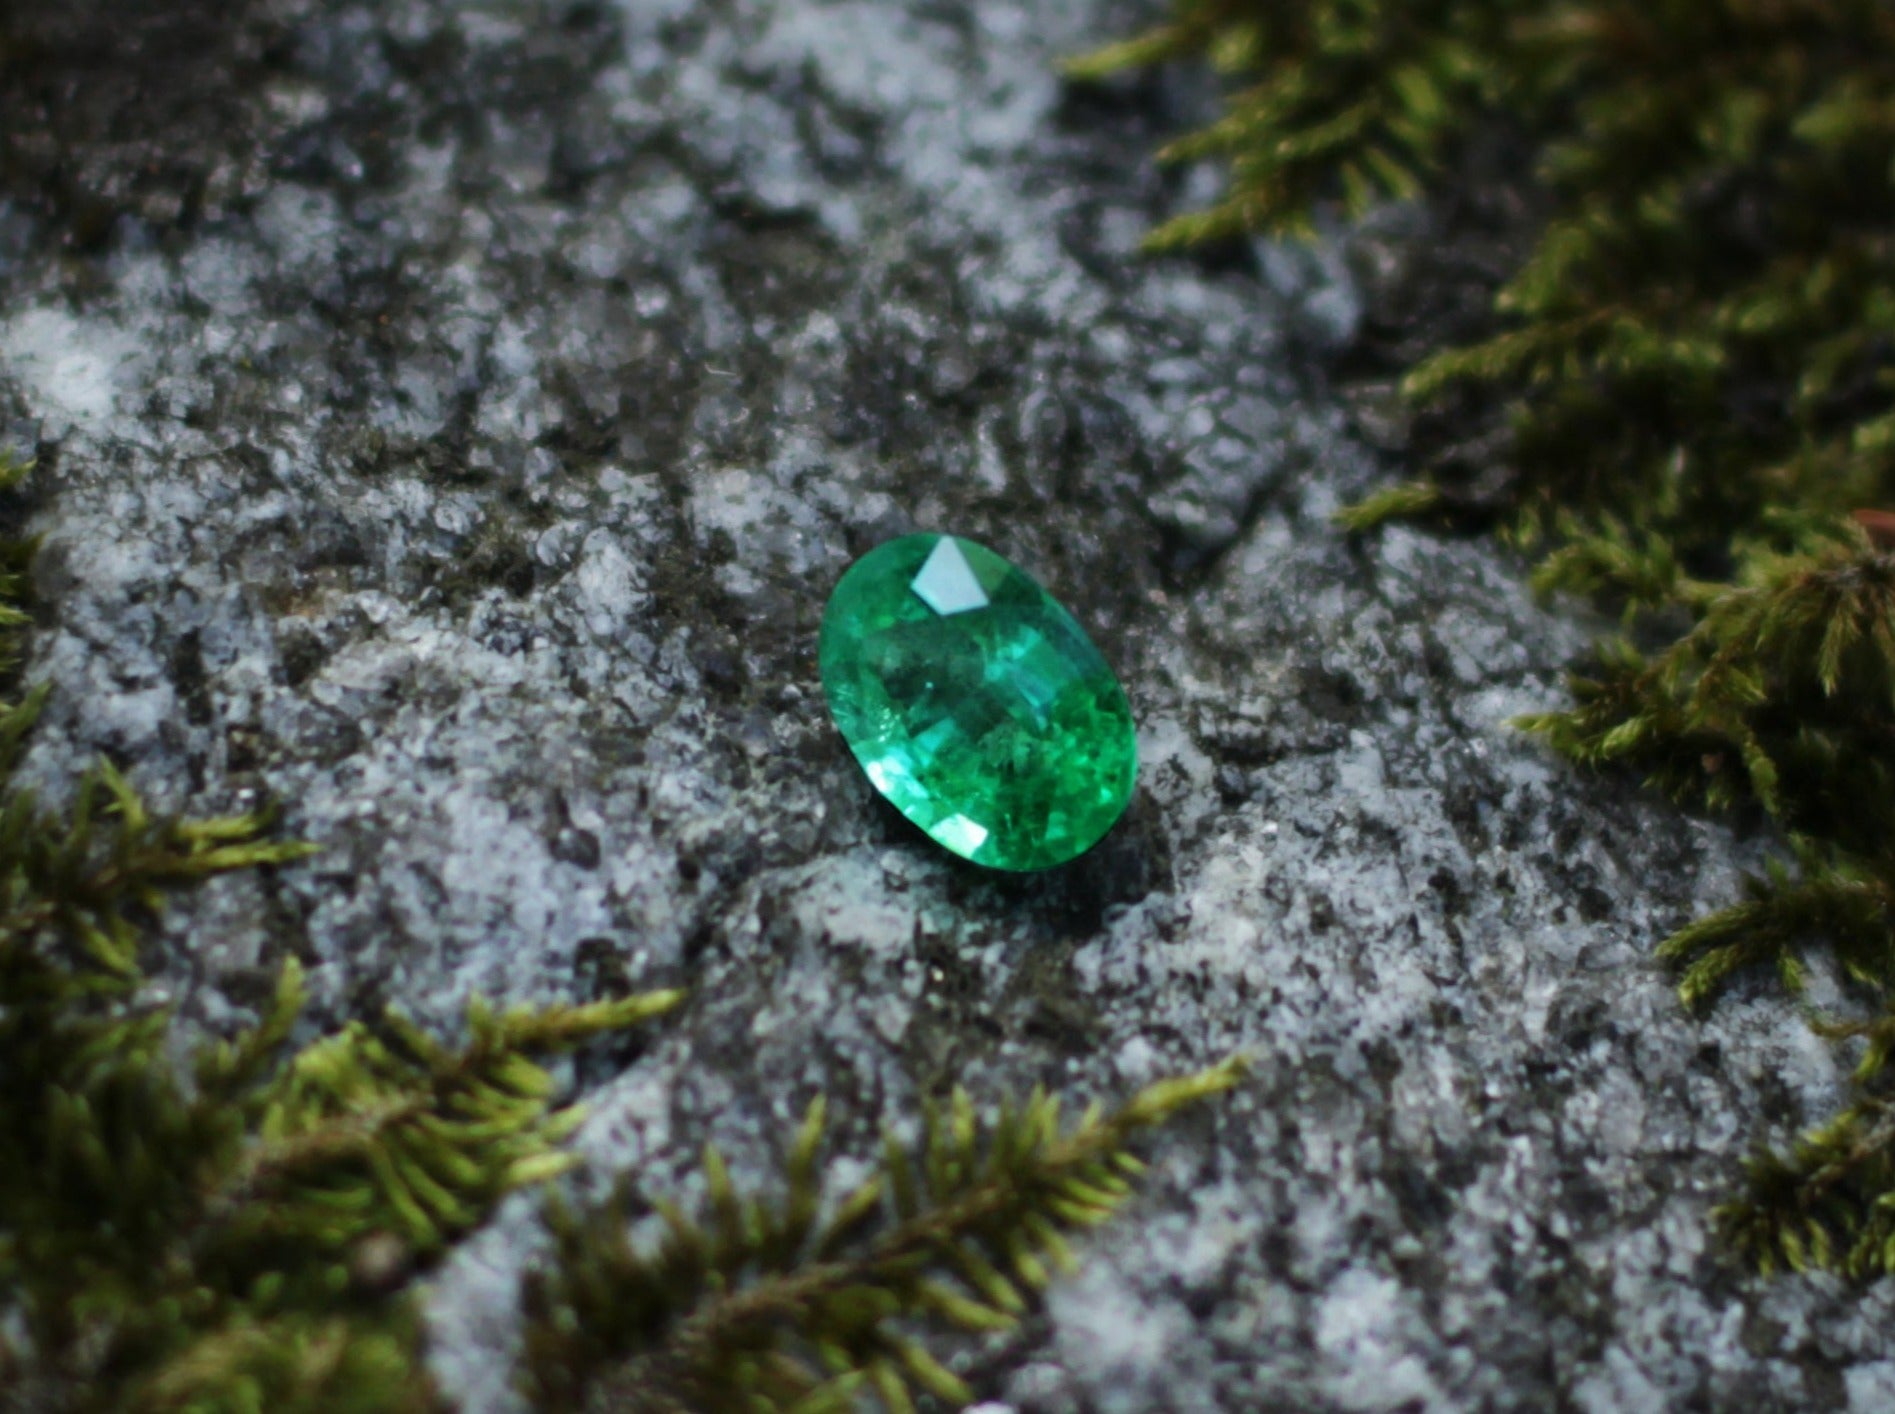 Shakiso Emerald oval 3.35 ct